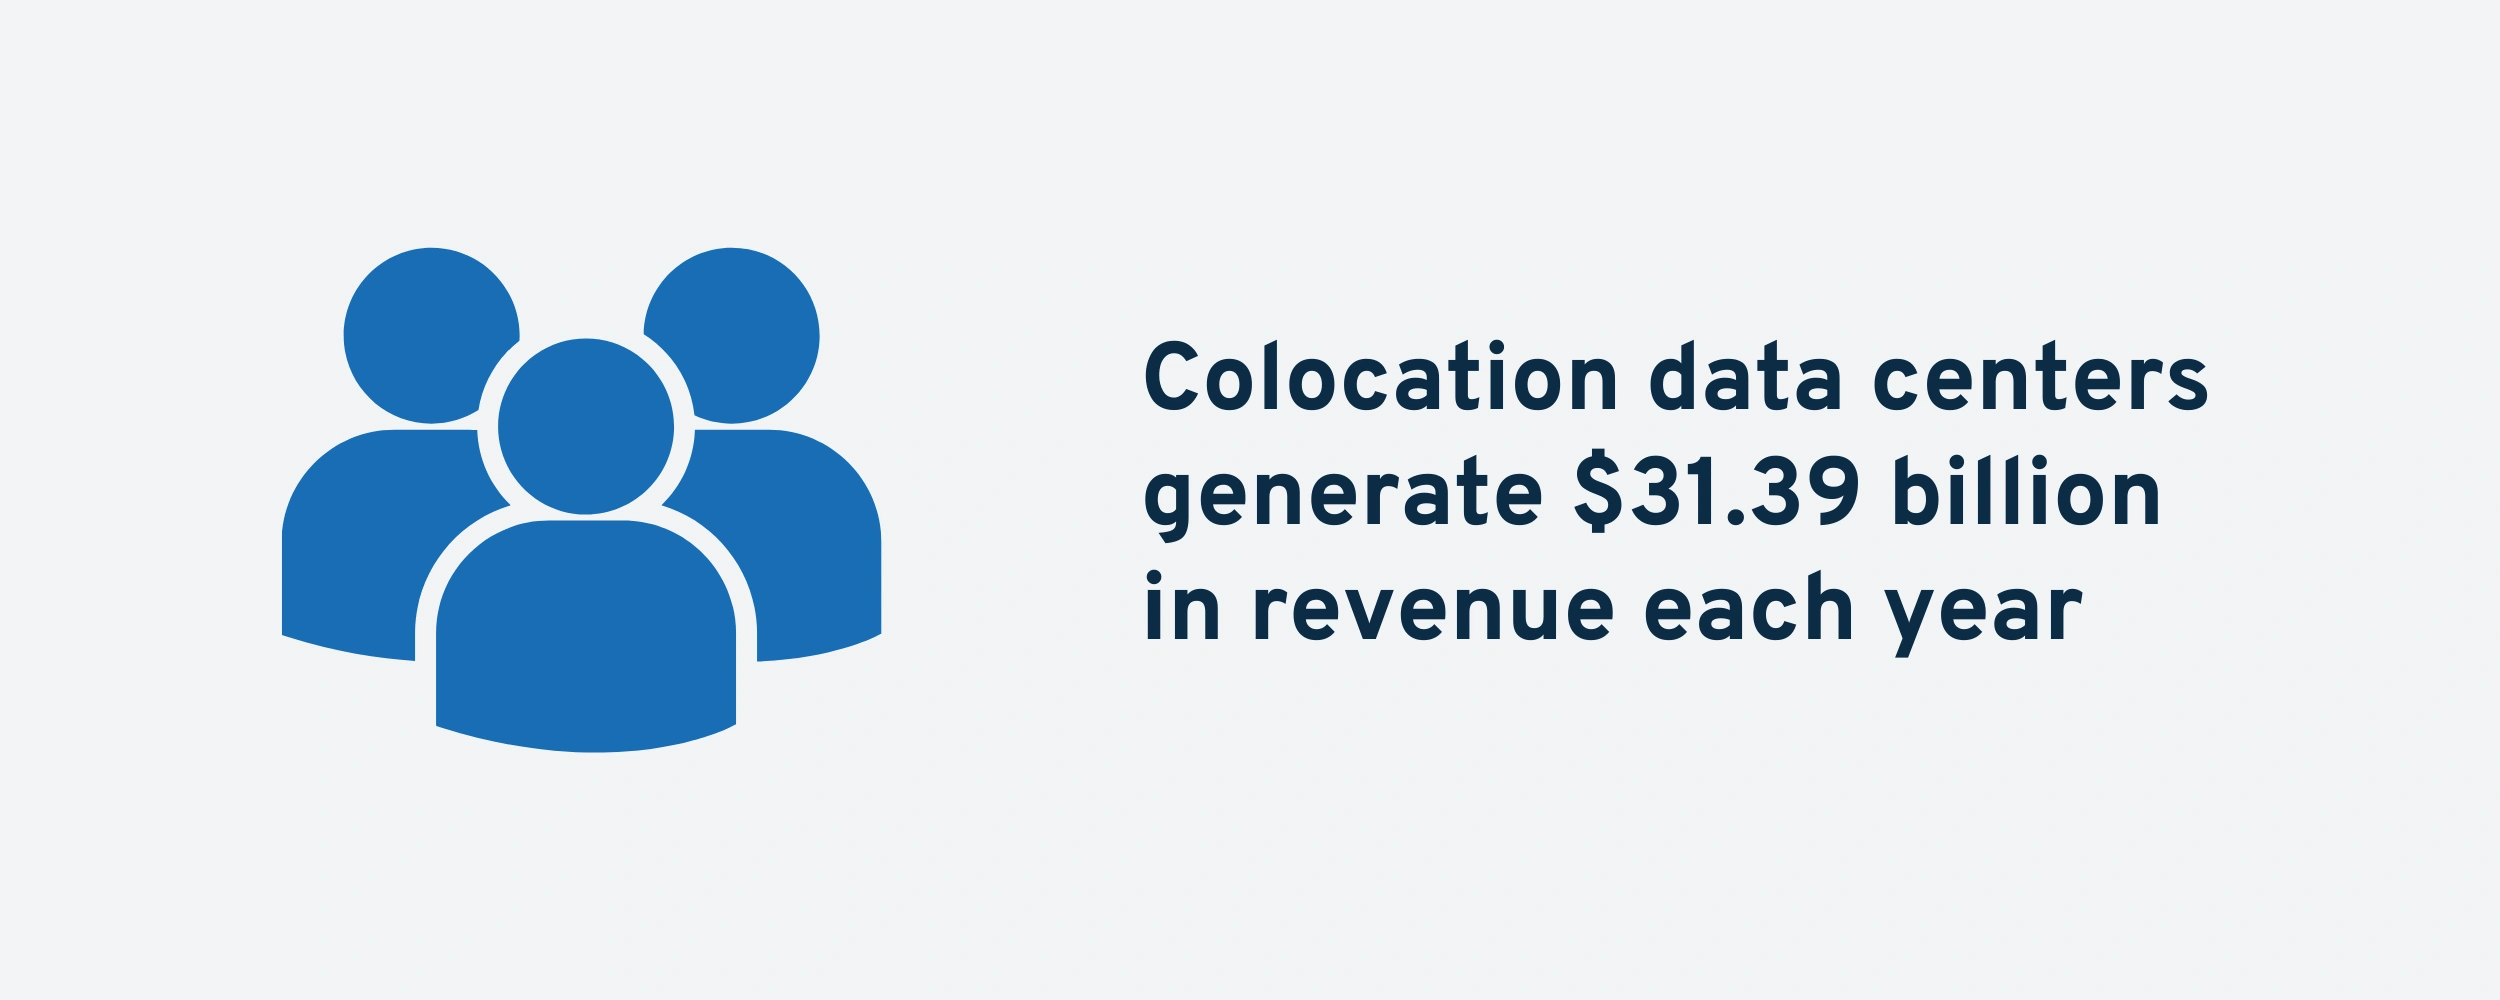 colocation-centers-revenue-min.png